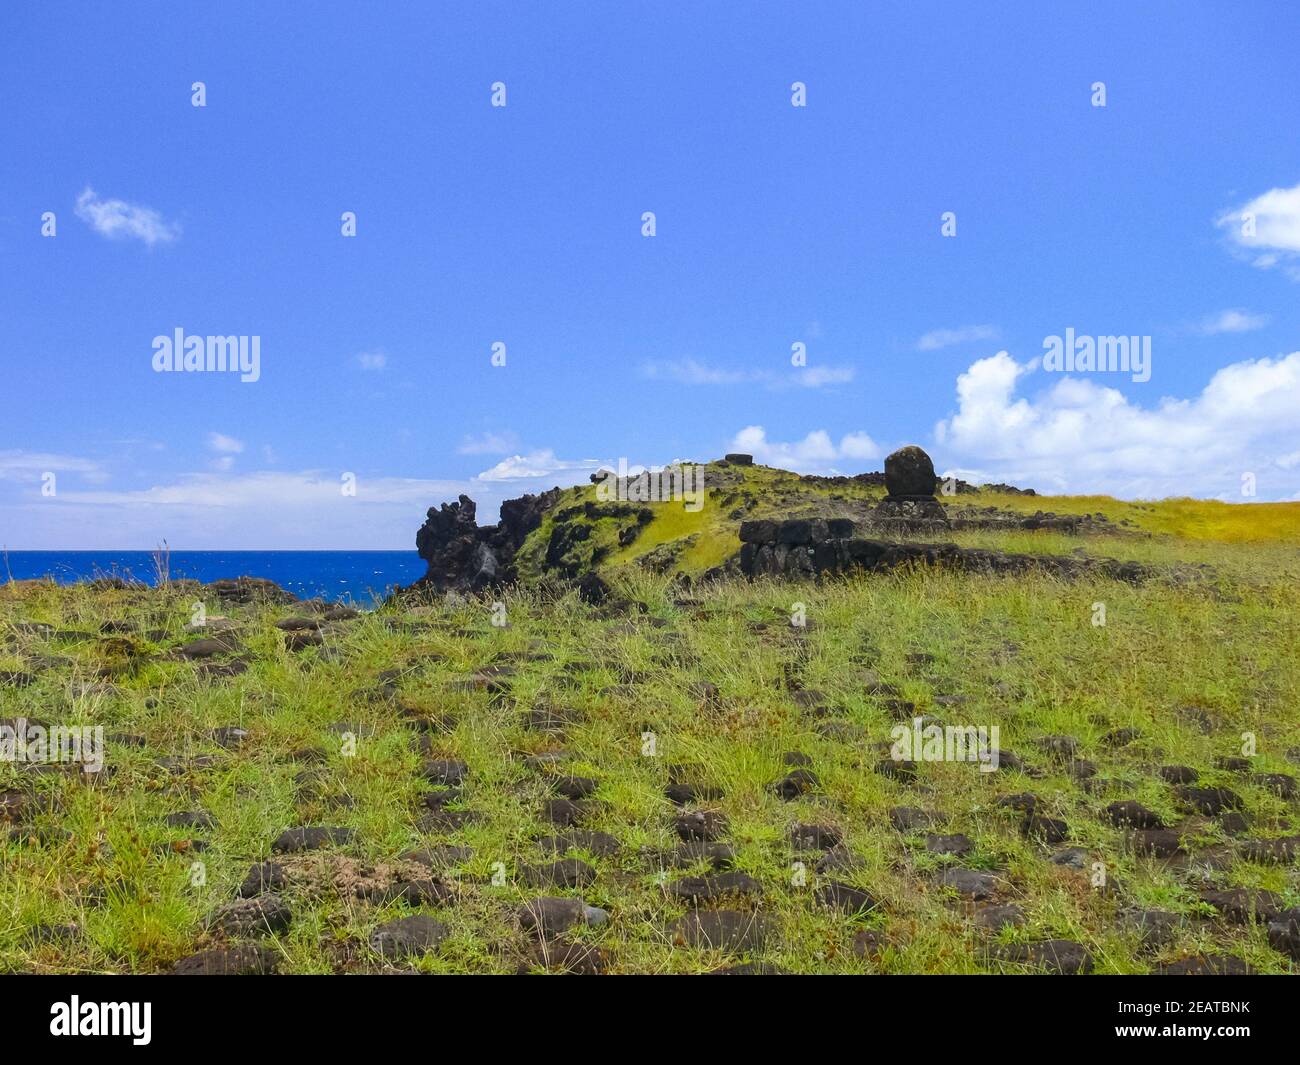 Naturaleza de la Isla de Pascua, paisaje, vegetación y costa. Foto de stock